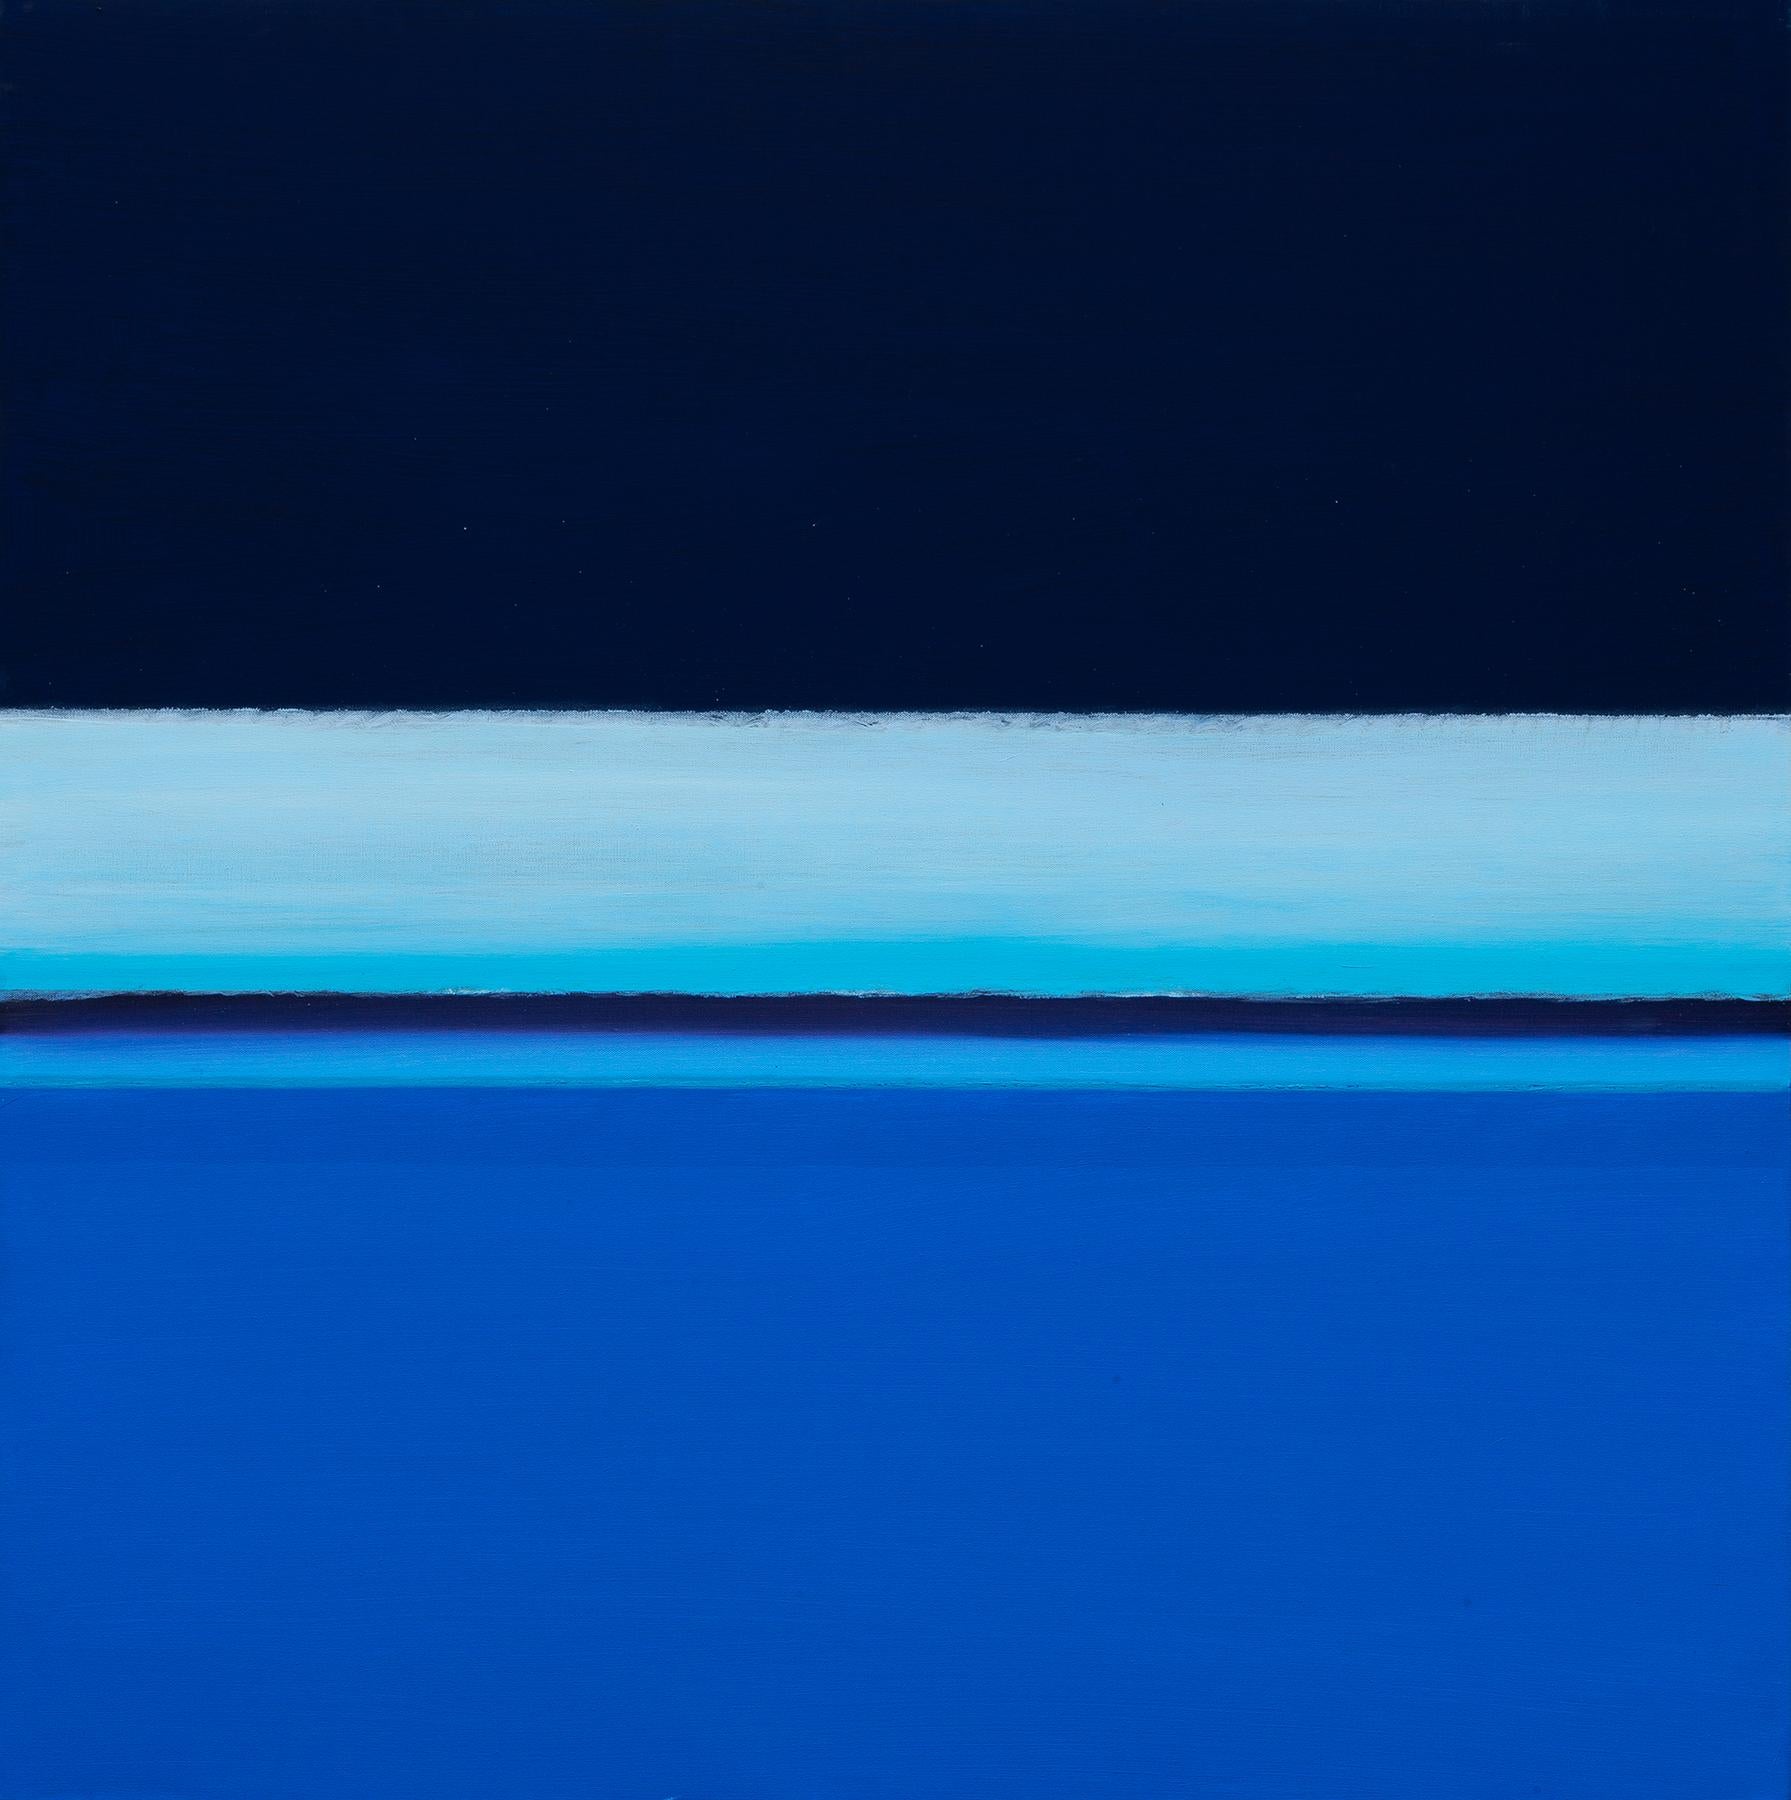 Abstract Painting Joseph McAleer - River of Dreams II : peinture de paysage abstrait avec eau bleue et ciel nocturne